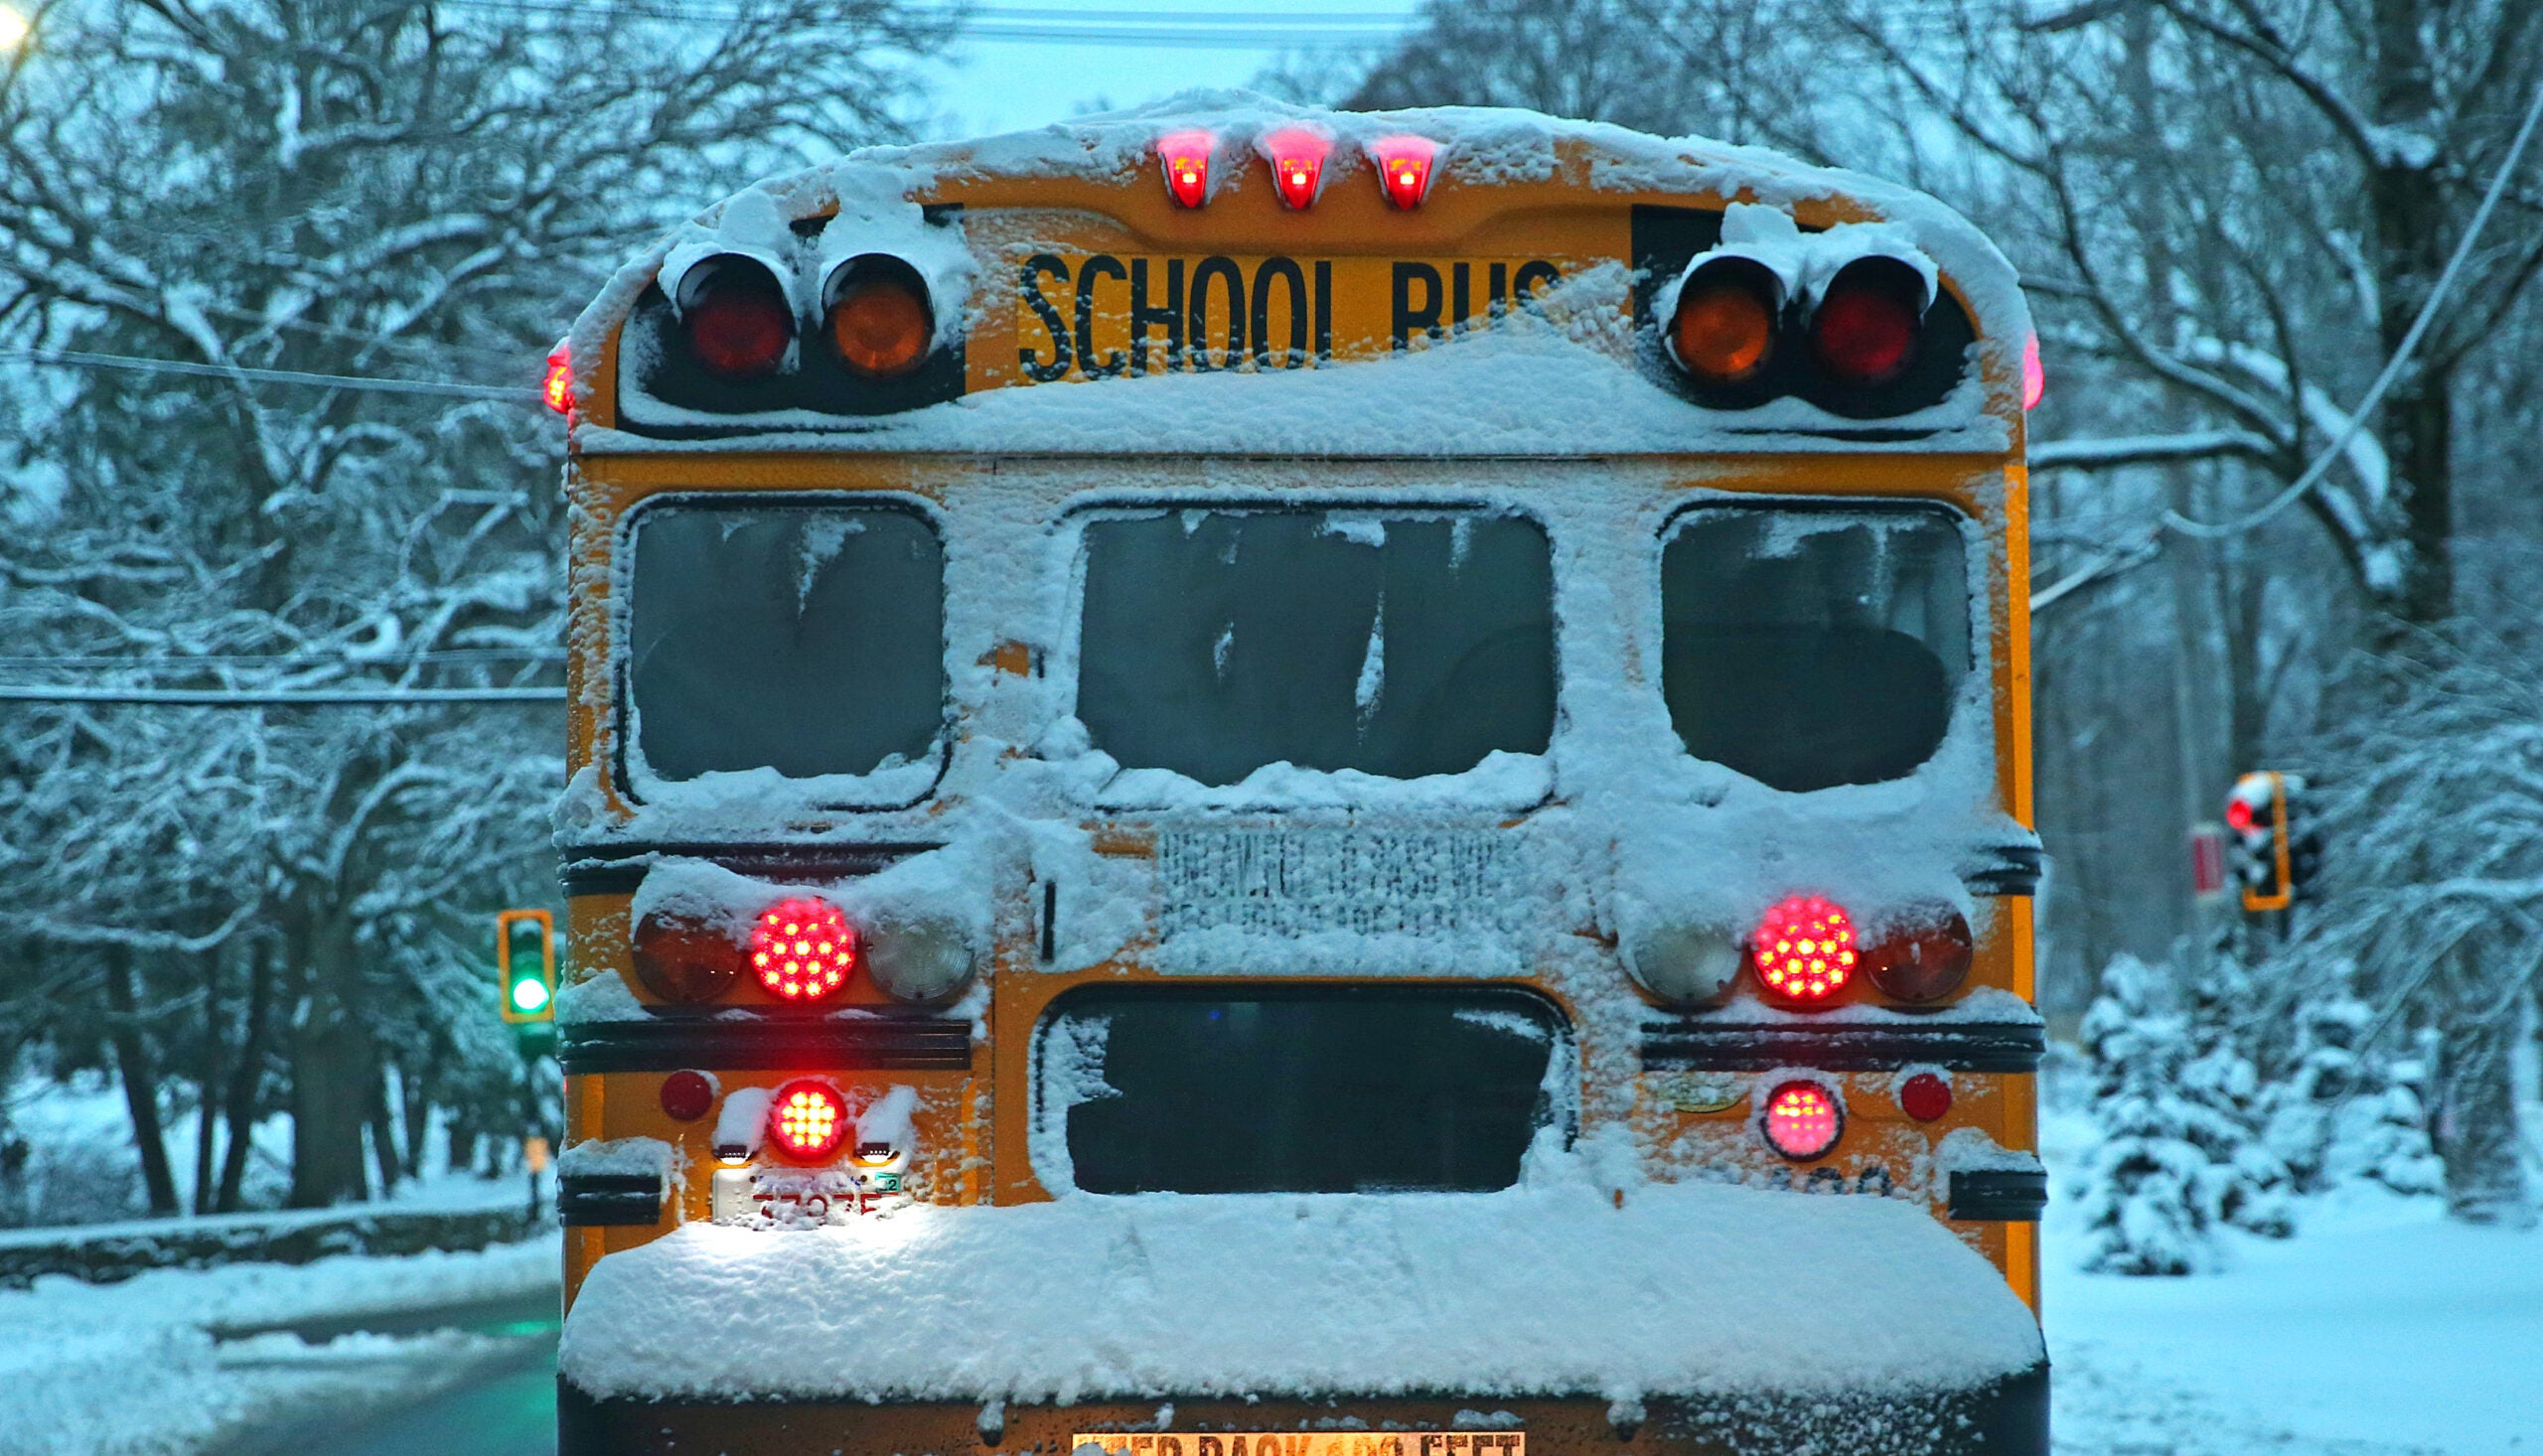 A snowy school bus